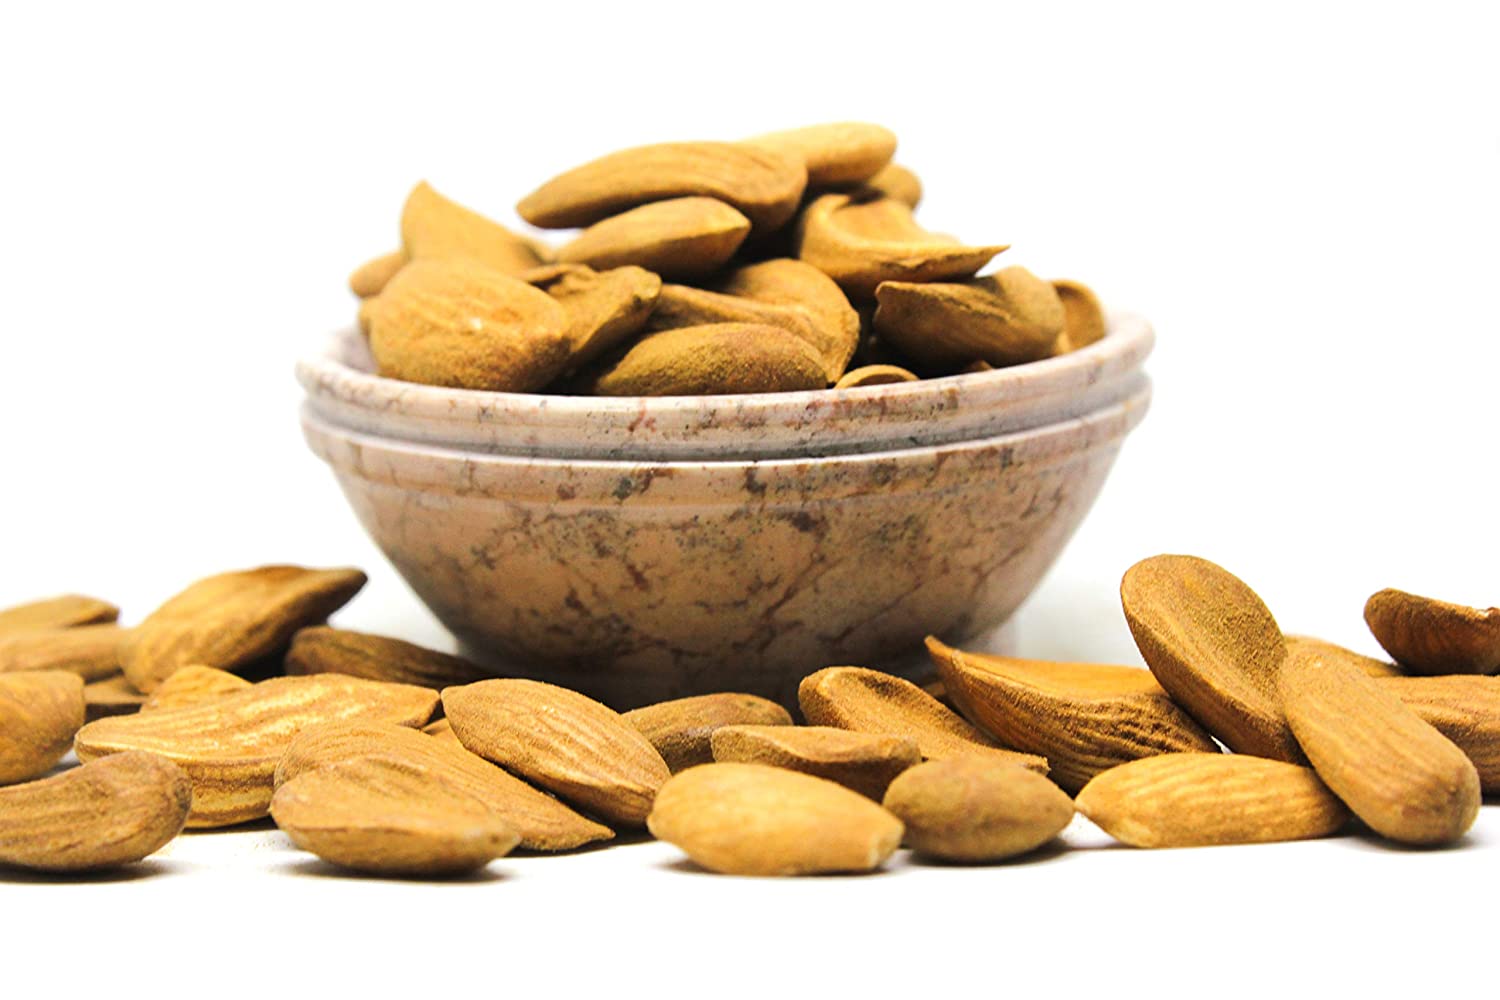  Online shopping for Mamra almond kernels